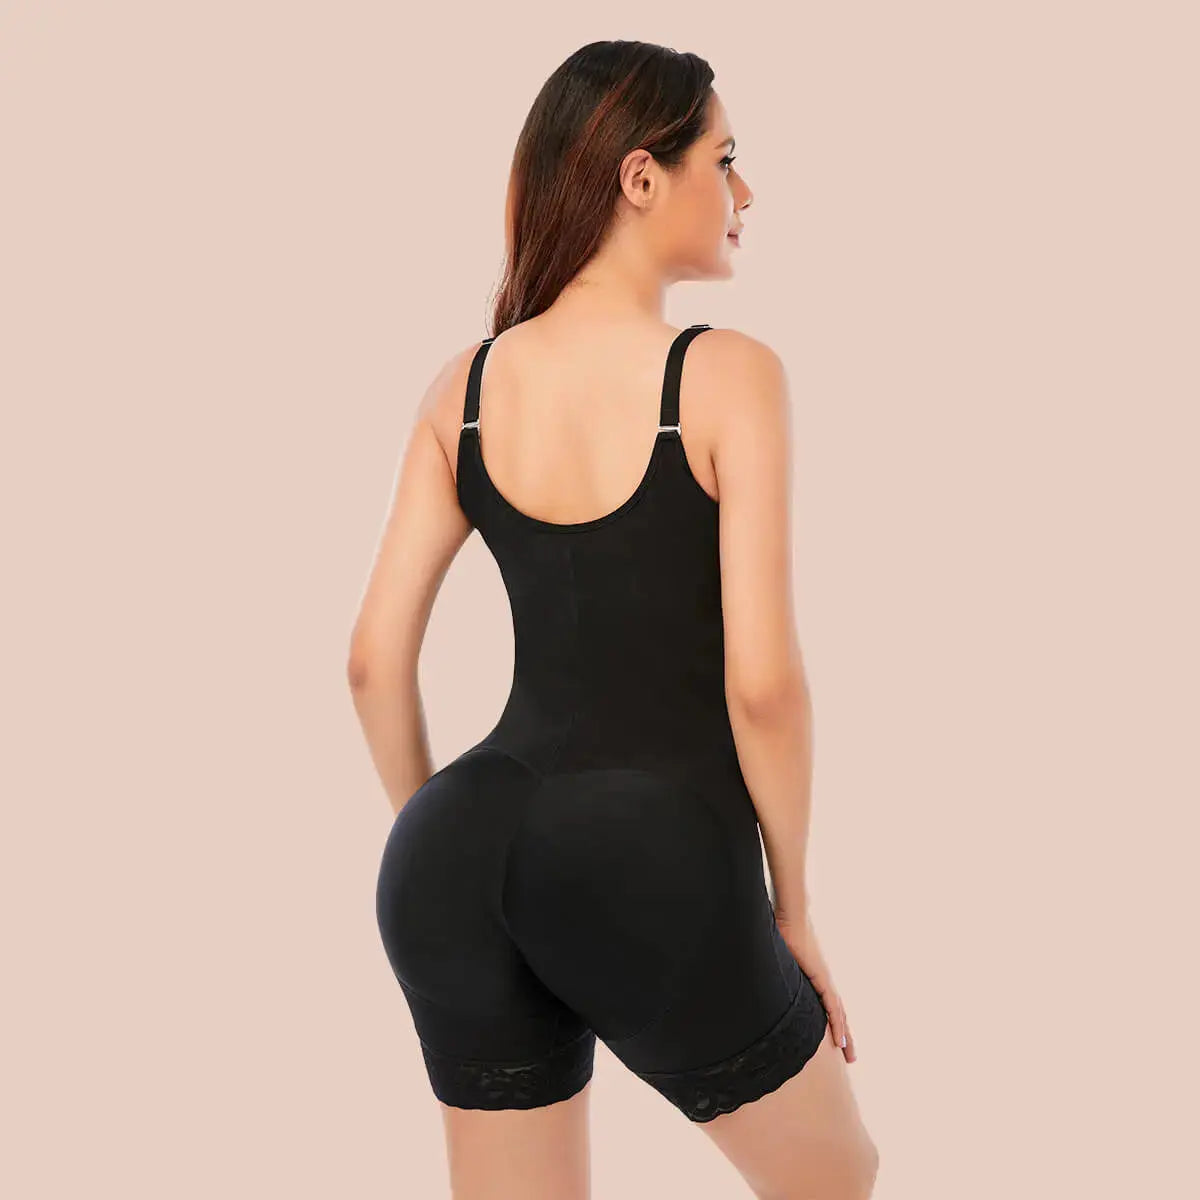 SHAPERX Shapewear for Women Fajas Colombianas Tummy Control Bodysuit